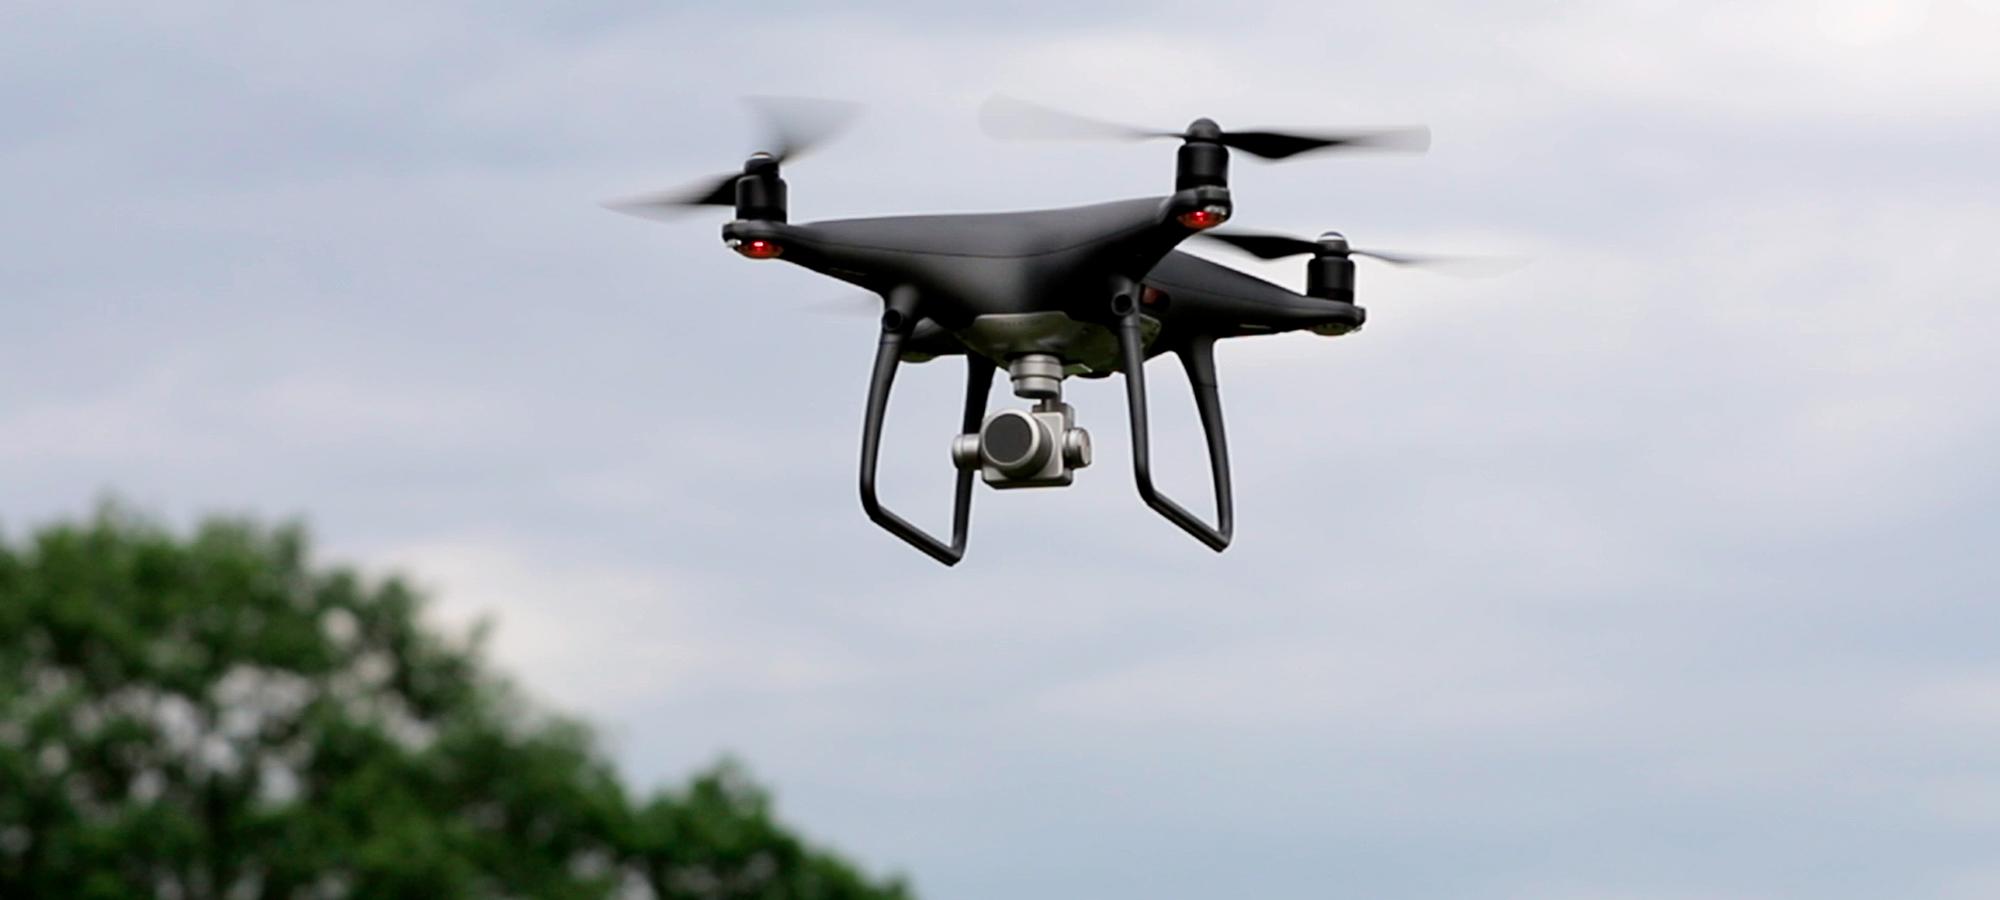 Drohne im Flug über Bäumen bei bewölktem Himmel